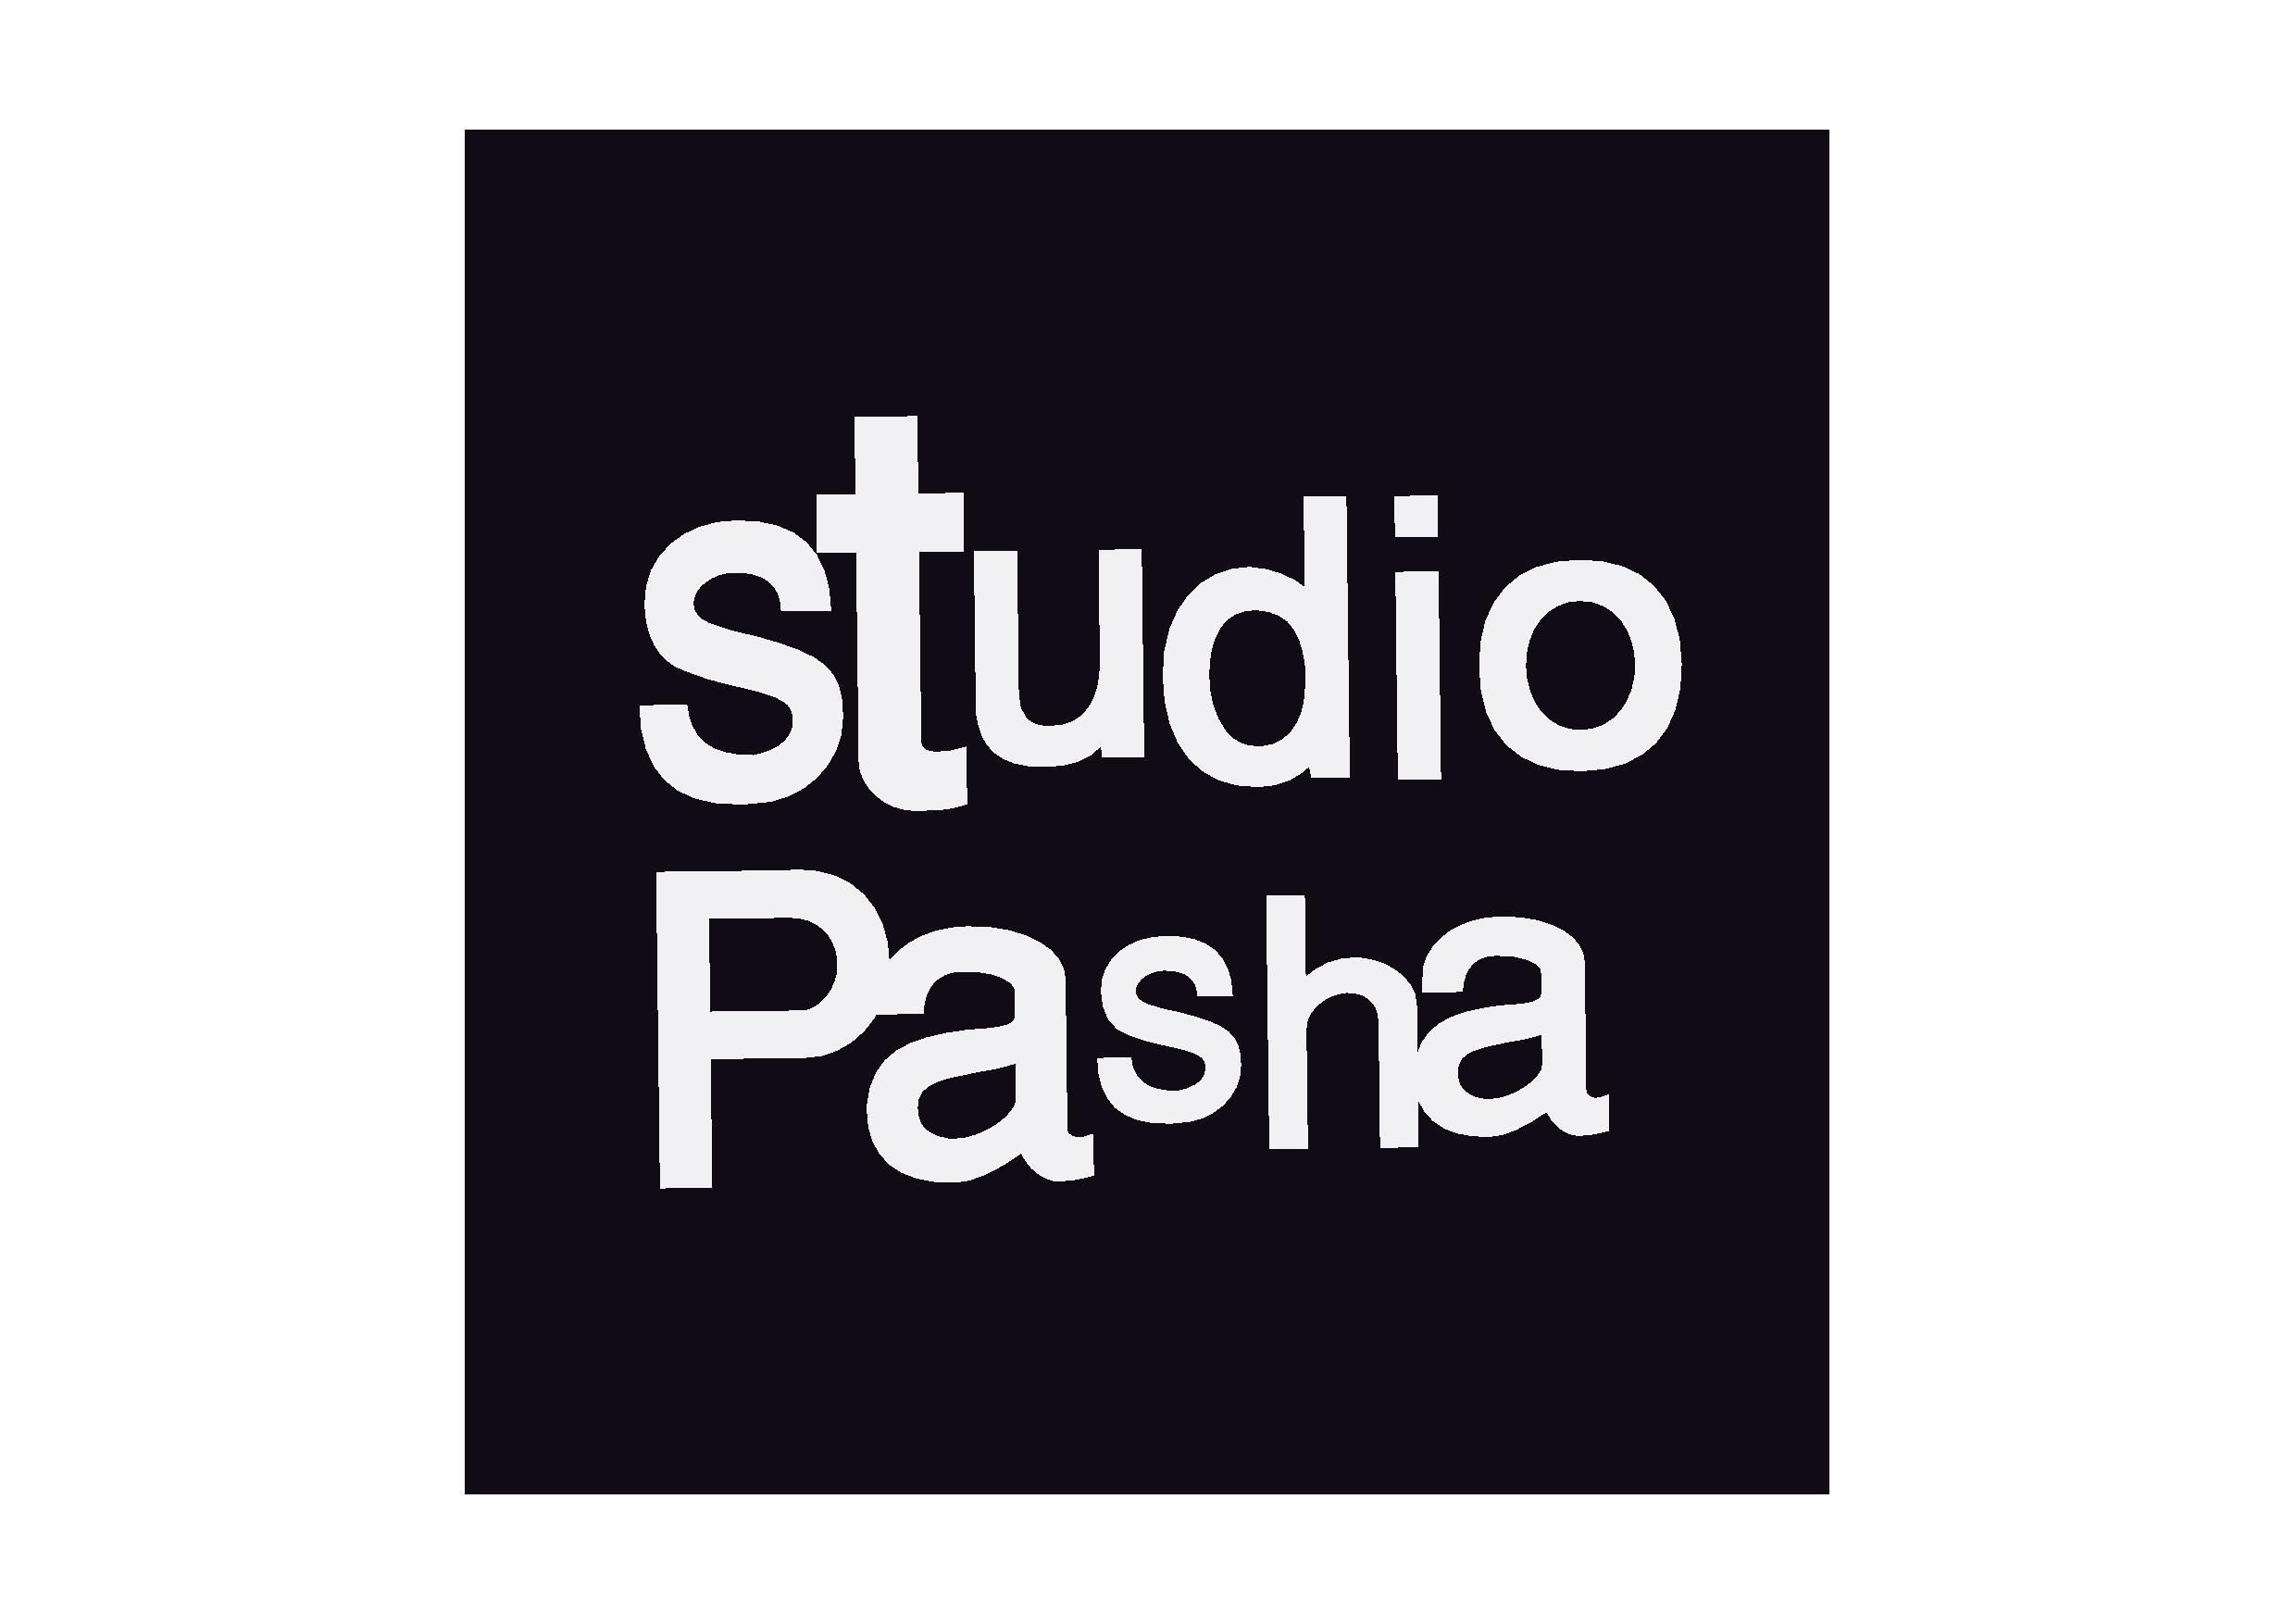 Studio Pasha